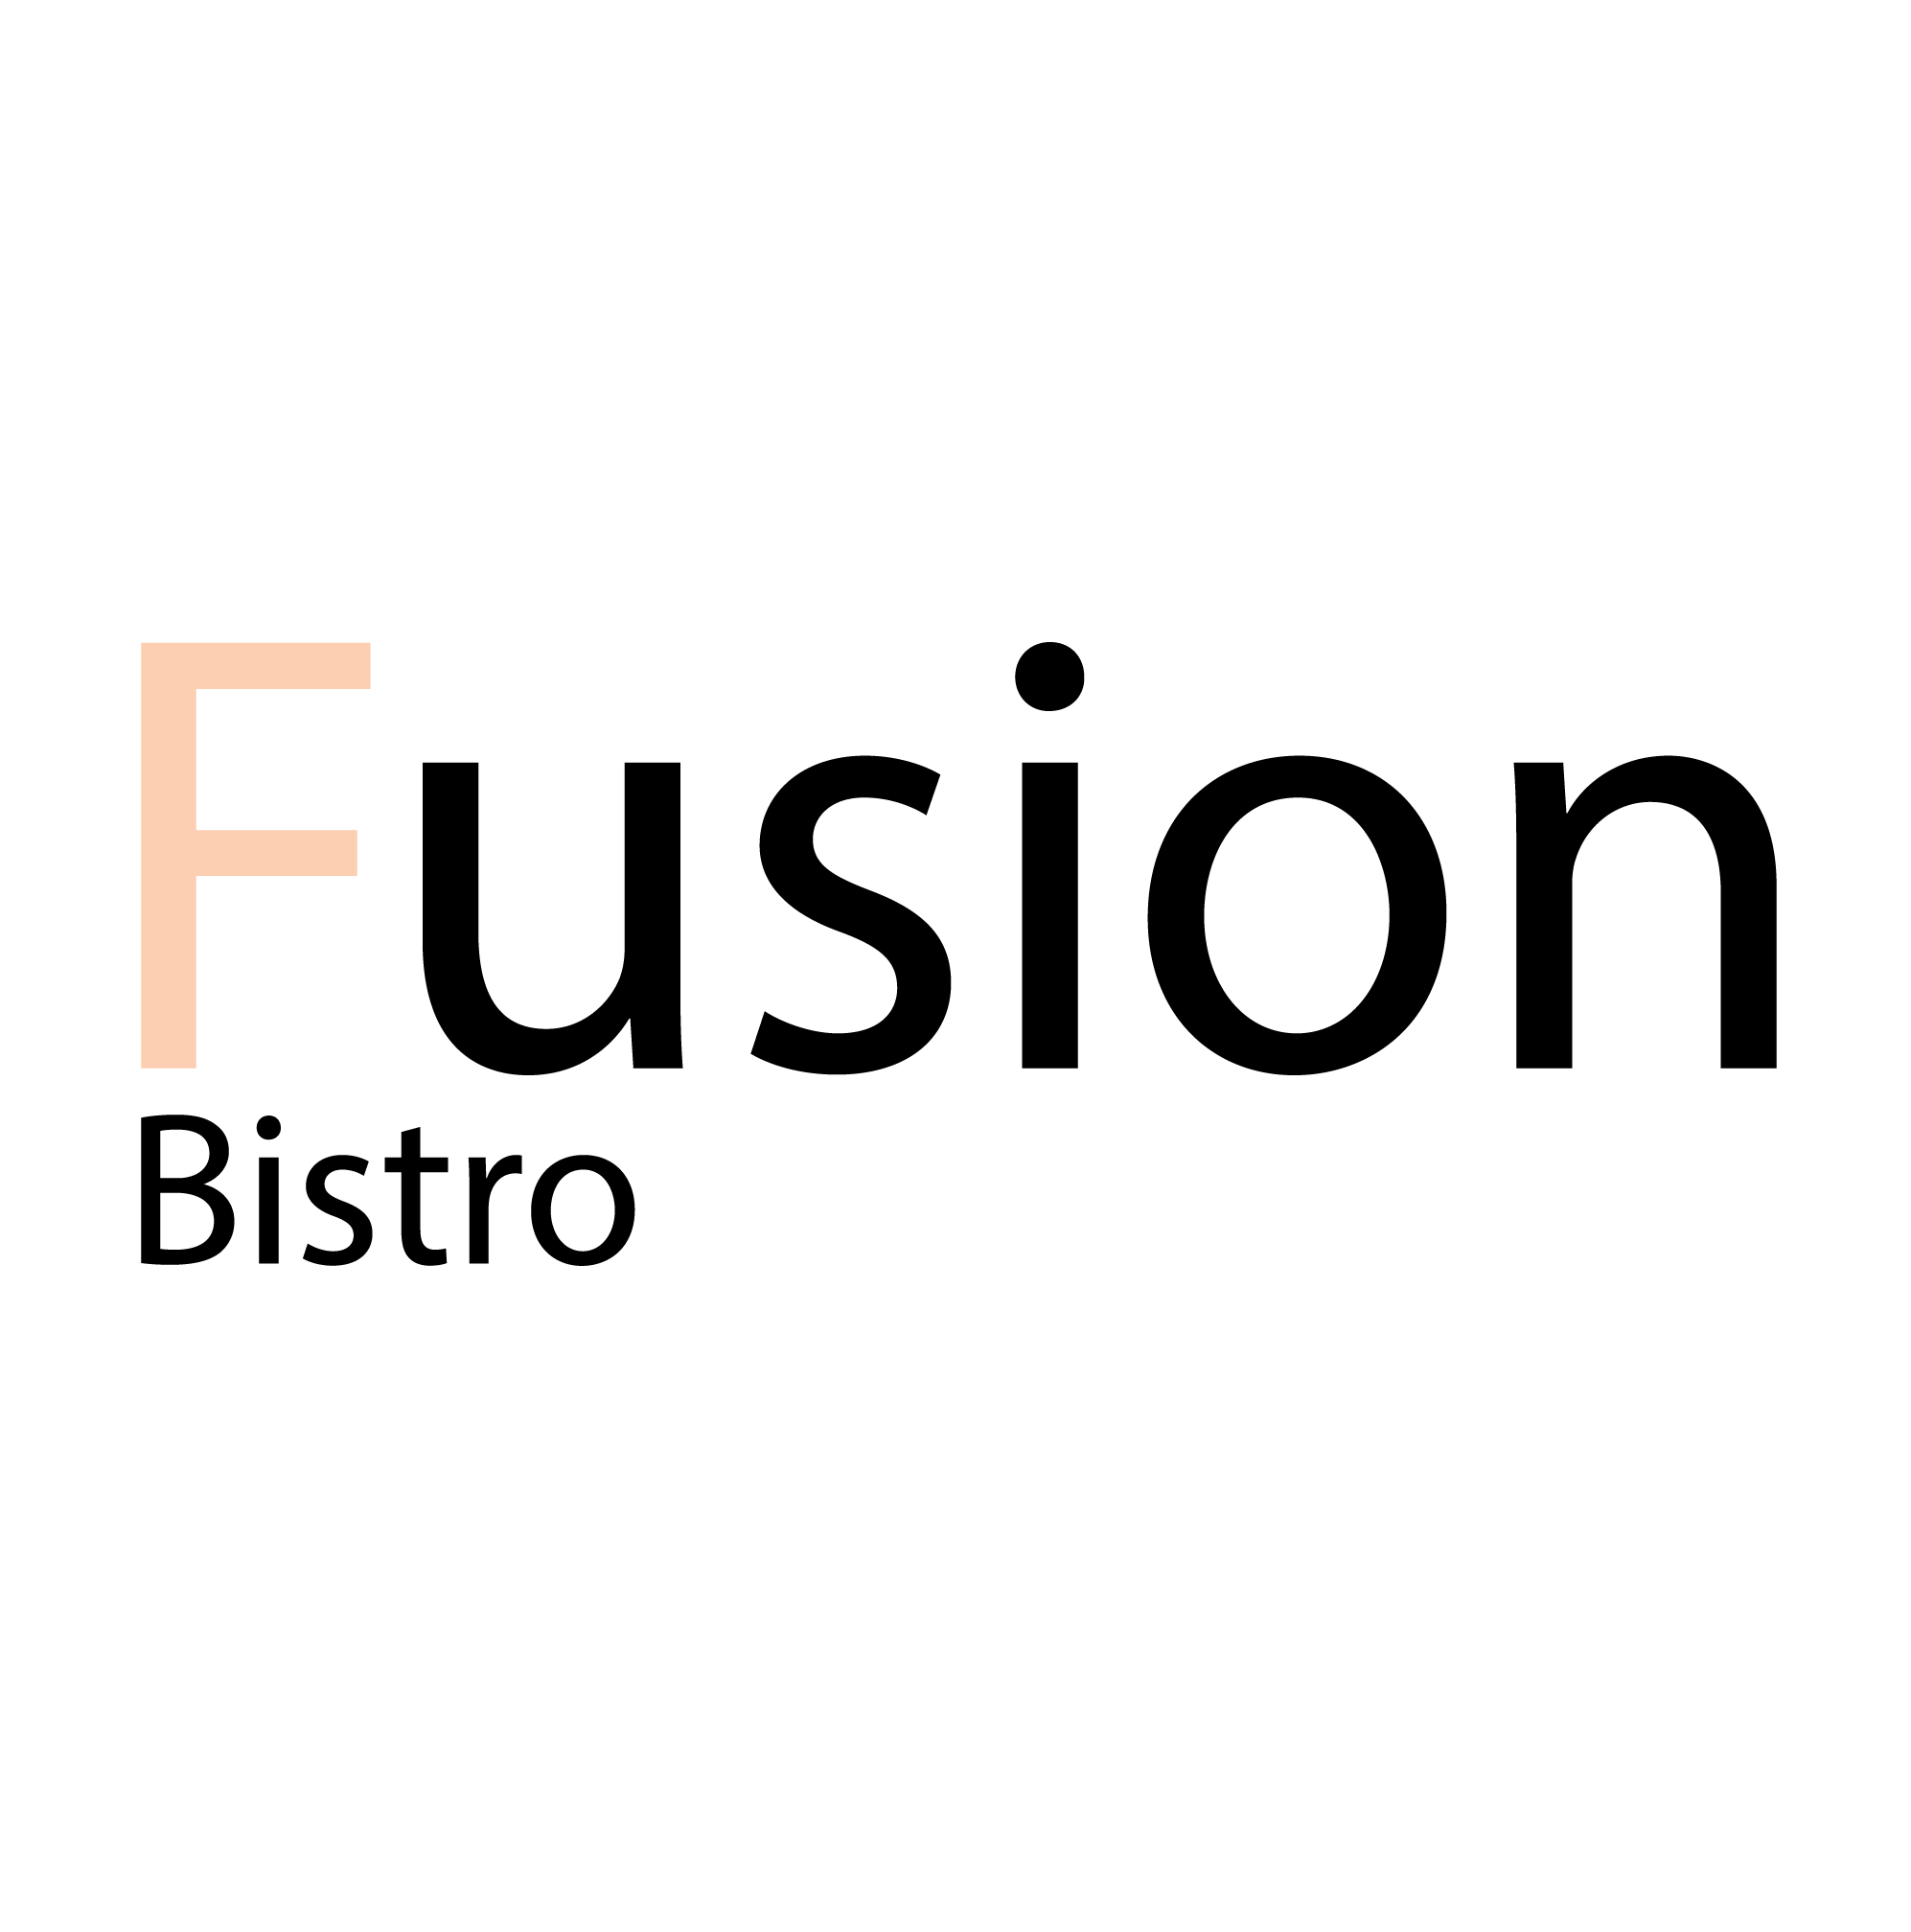 Fusion Bistro